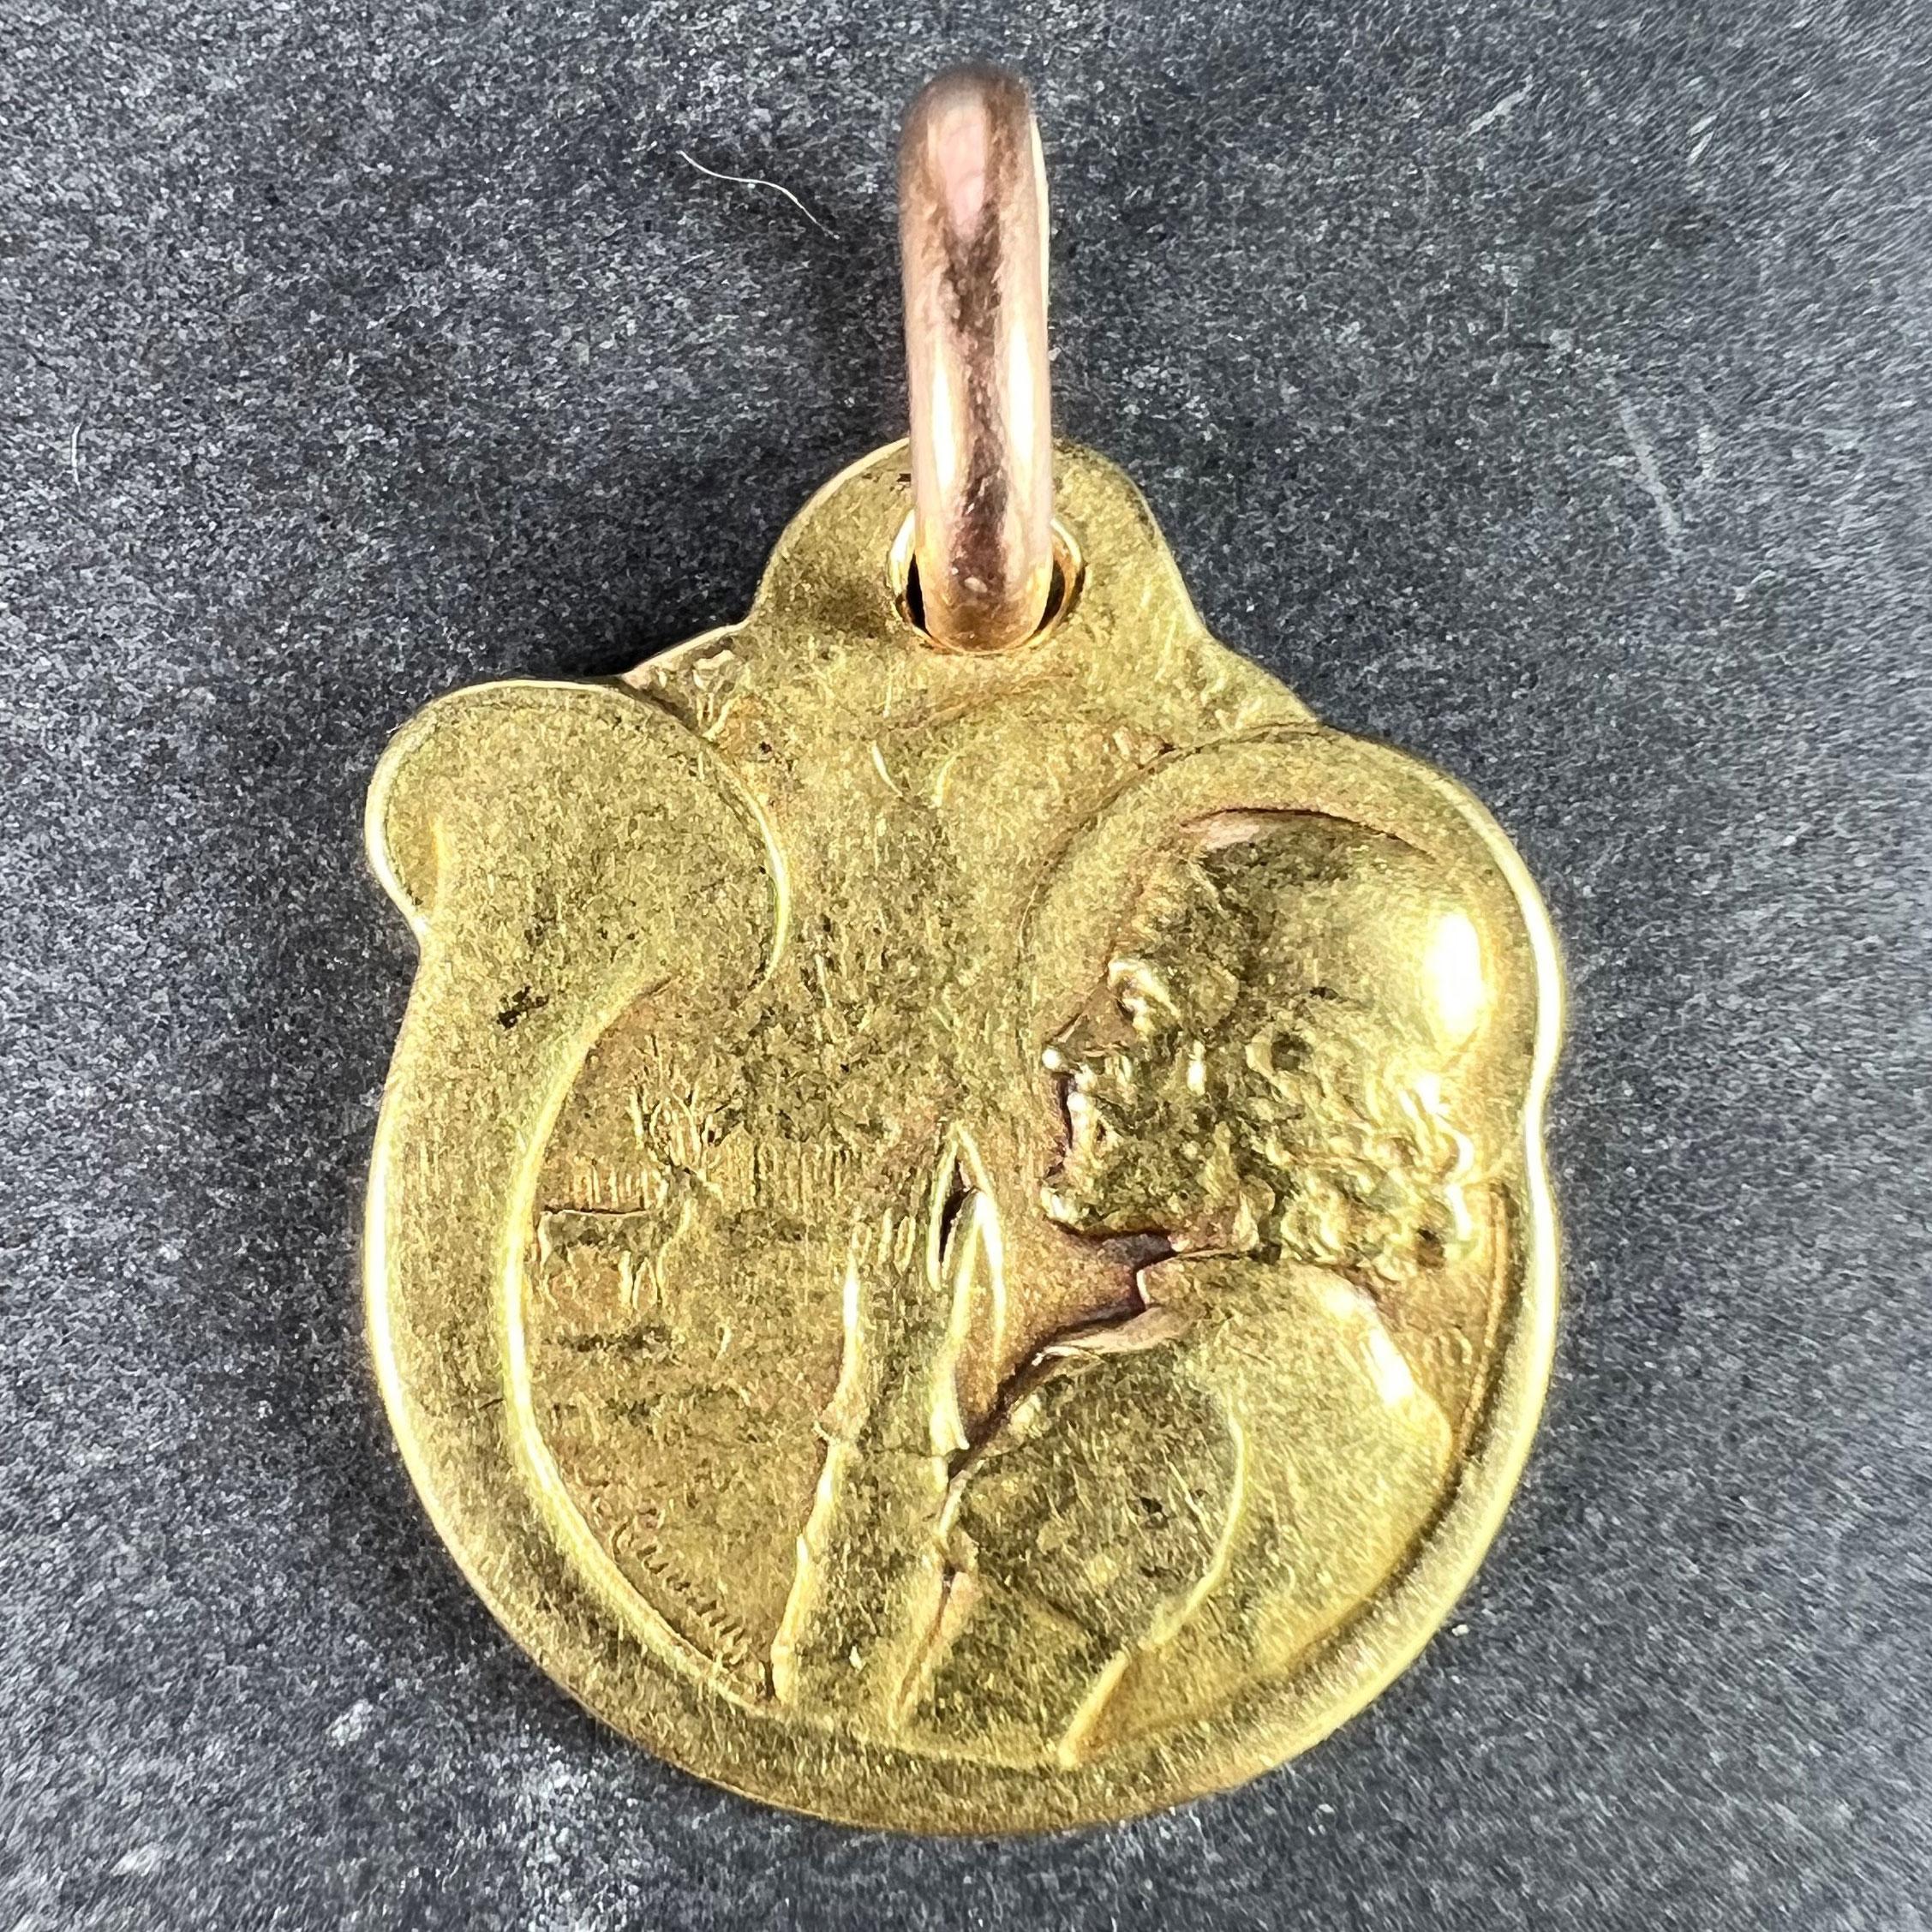 Pendentif à breloques en or jaune 18 carats (18K) conçu comme une médaille gravée représentant un homme en prière à la chasse au cerf entouré d'une corne de chasse regardant un cerf ou une biche devant une forêt. Le revers montre une tête de cerf